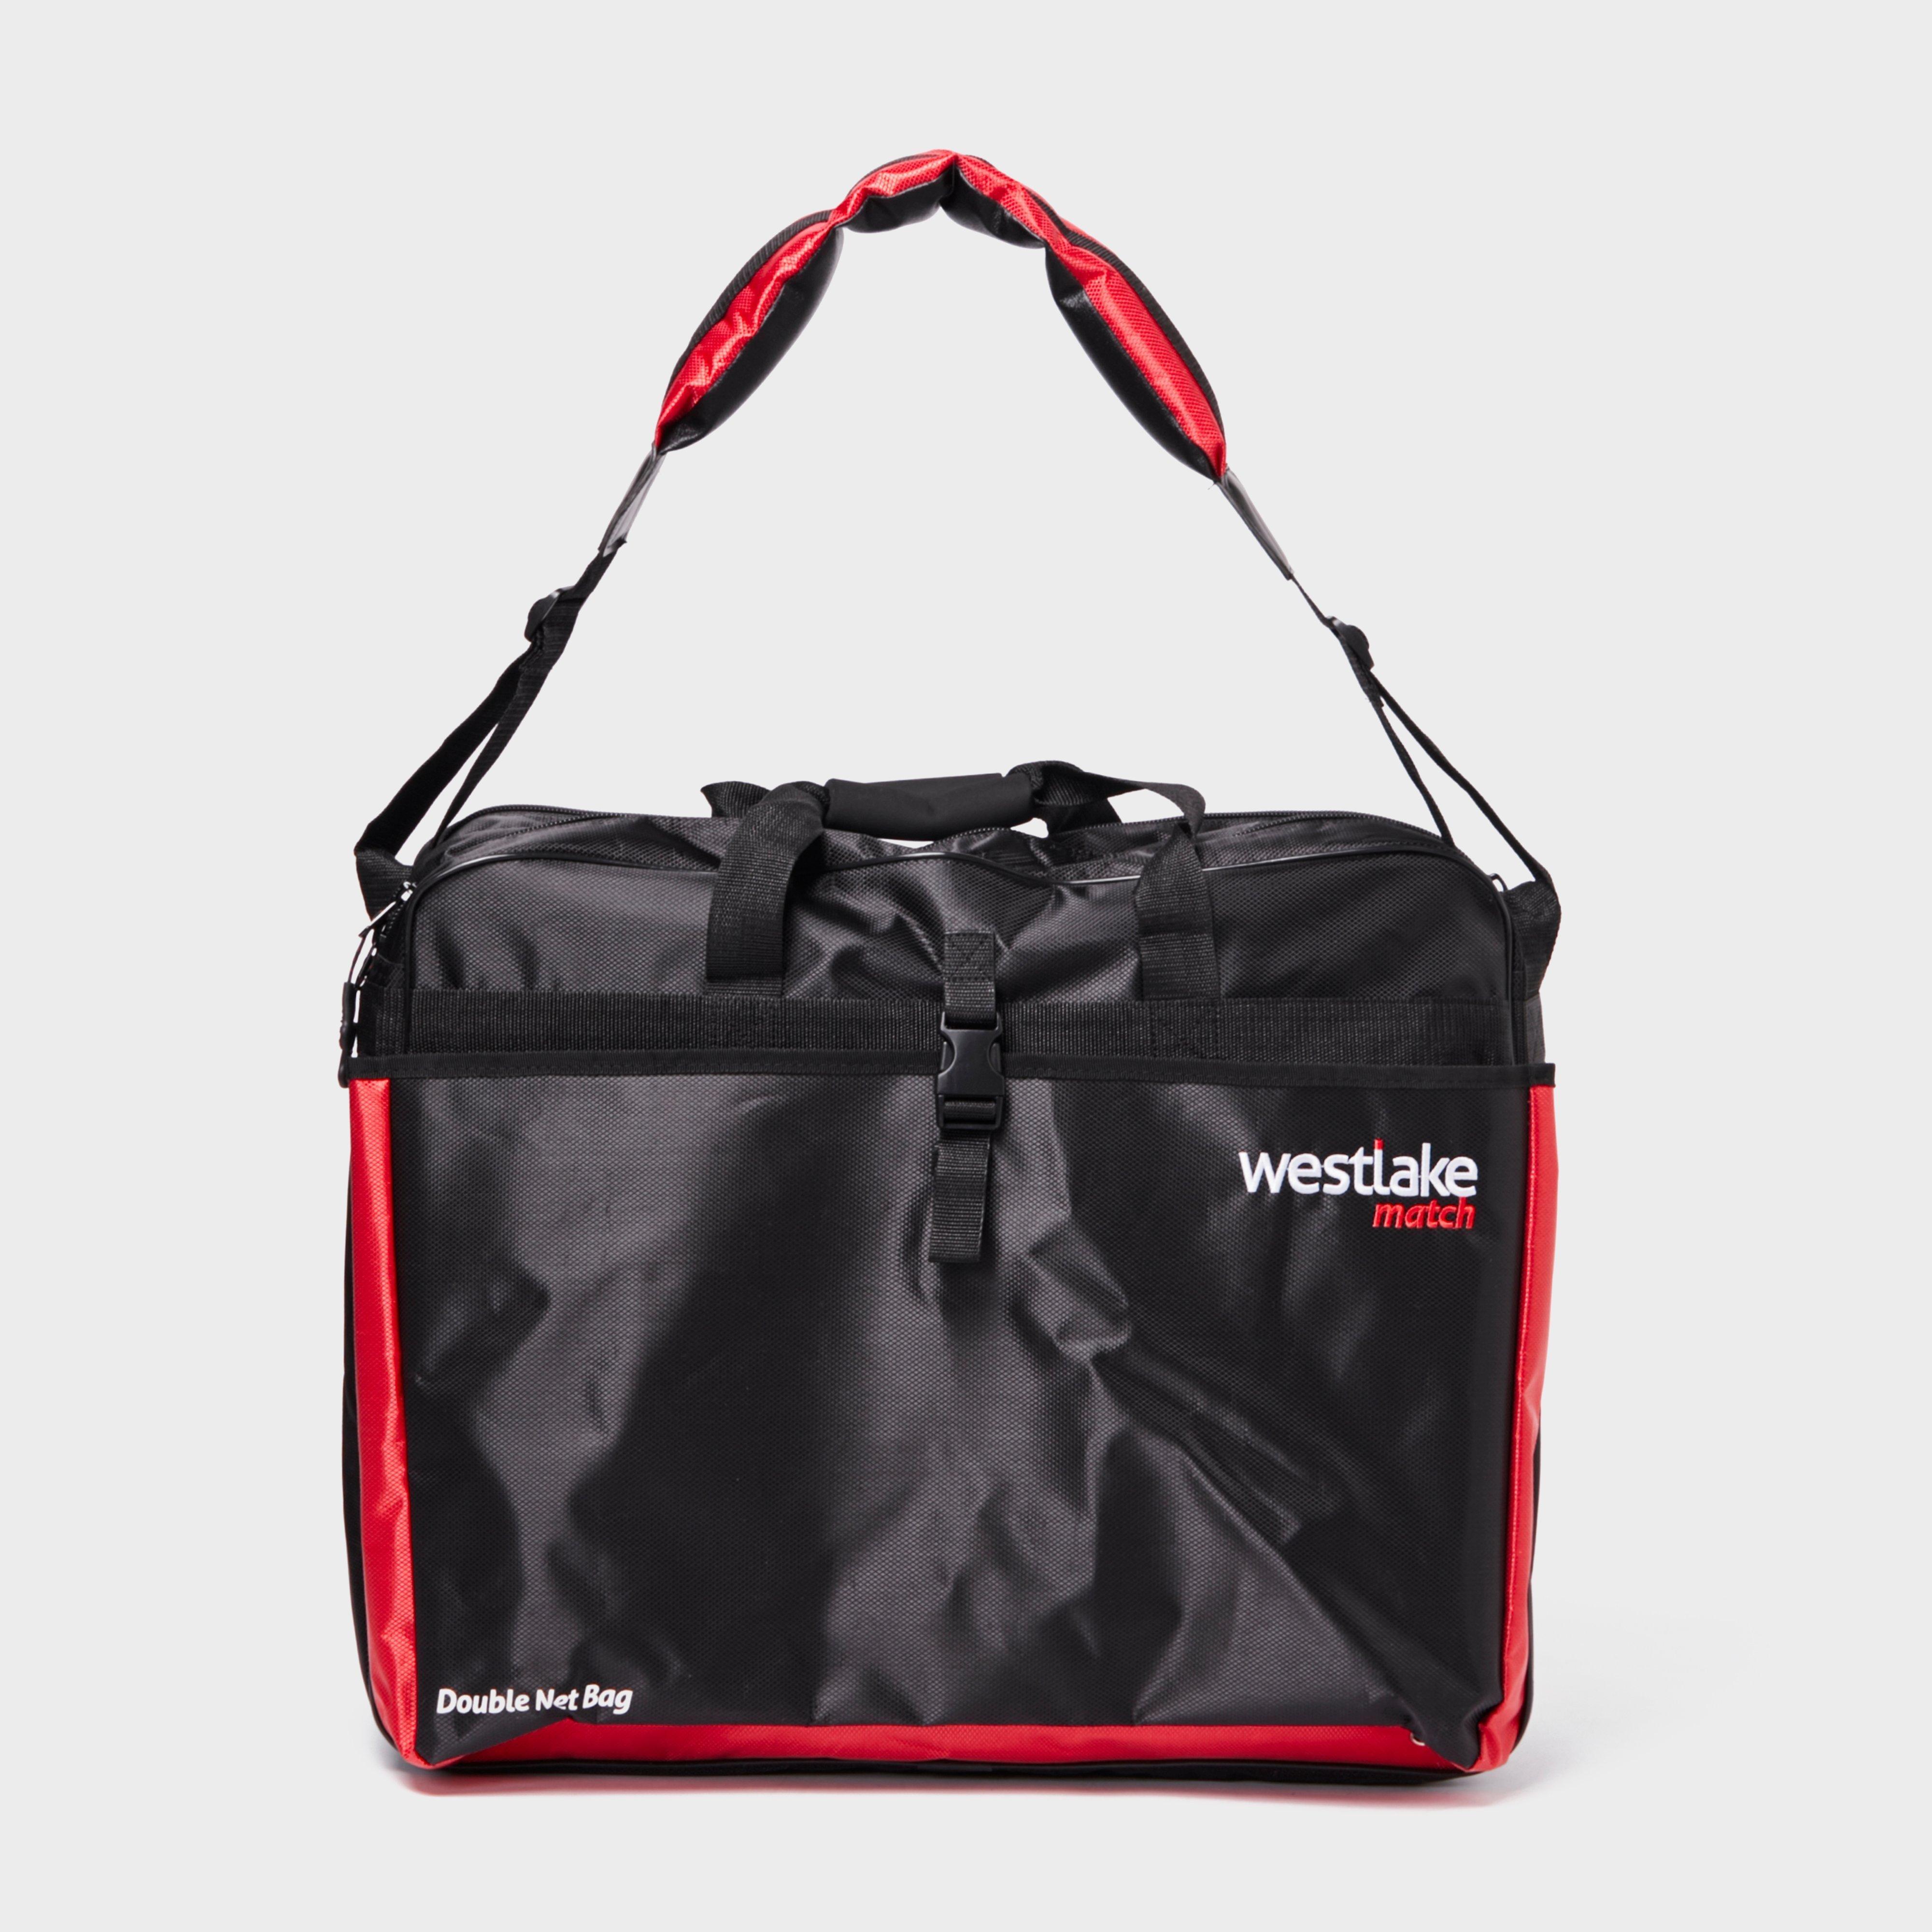 Westlake Match Double Net Bag - Black/bag  Black/bag